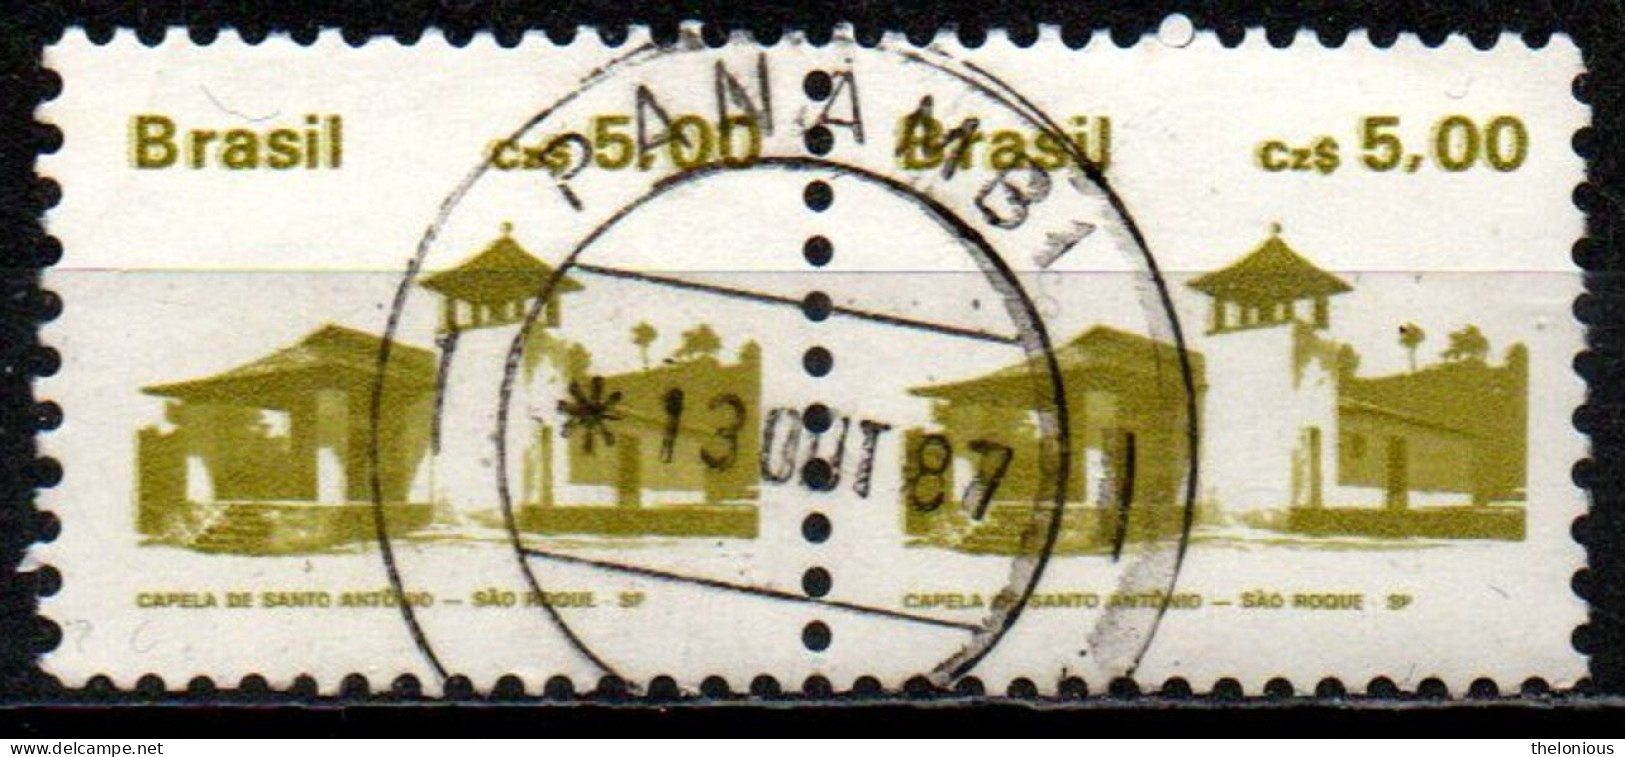 # Brasile 1986: St. Anthony's Chapel, Sao Roque - Dent. 11½ X 11 - Oblitérés